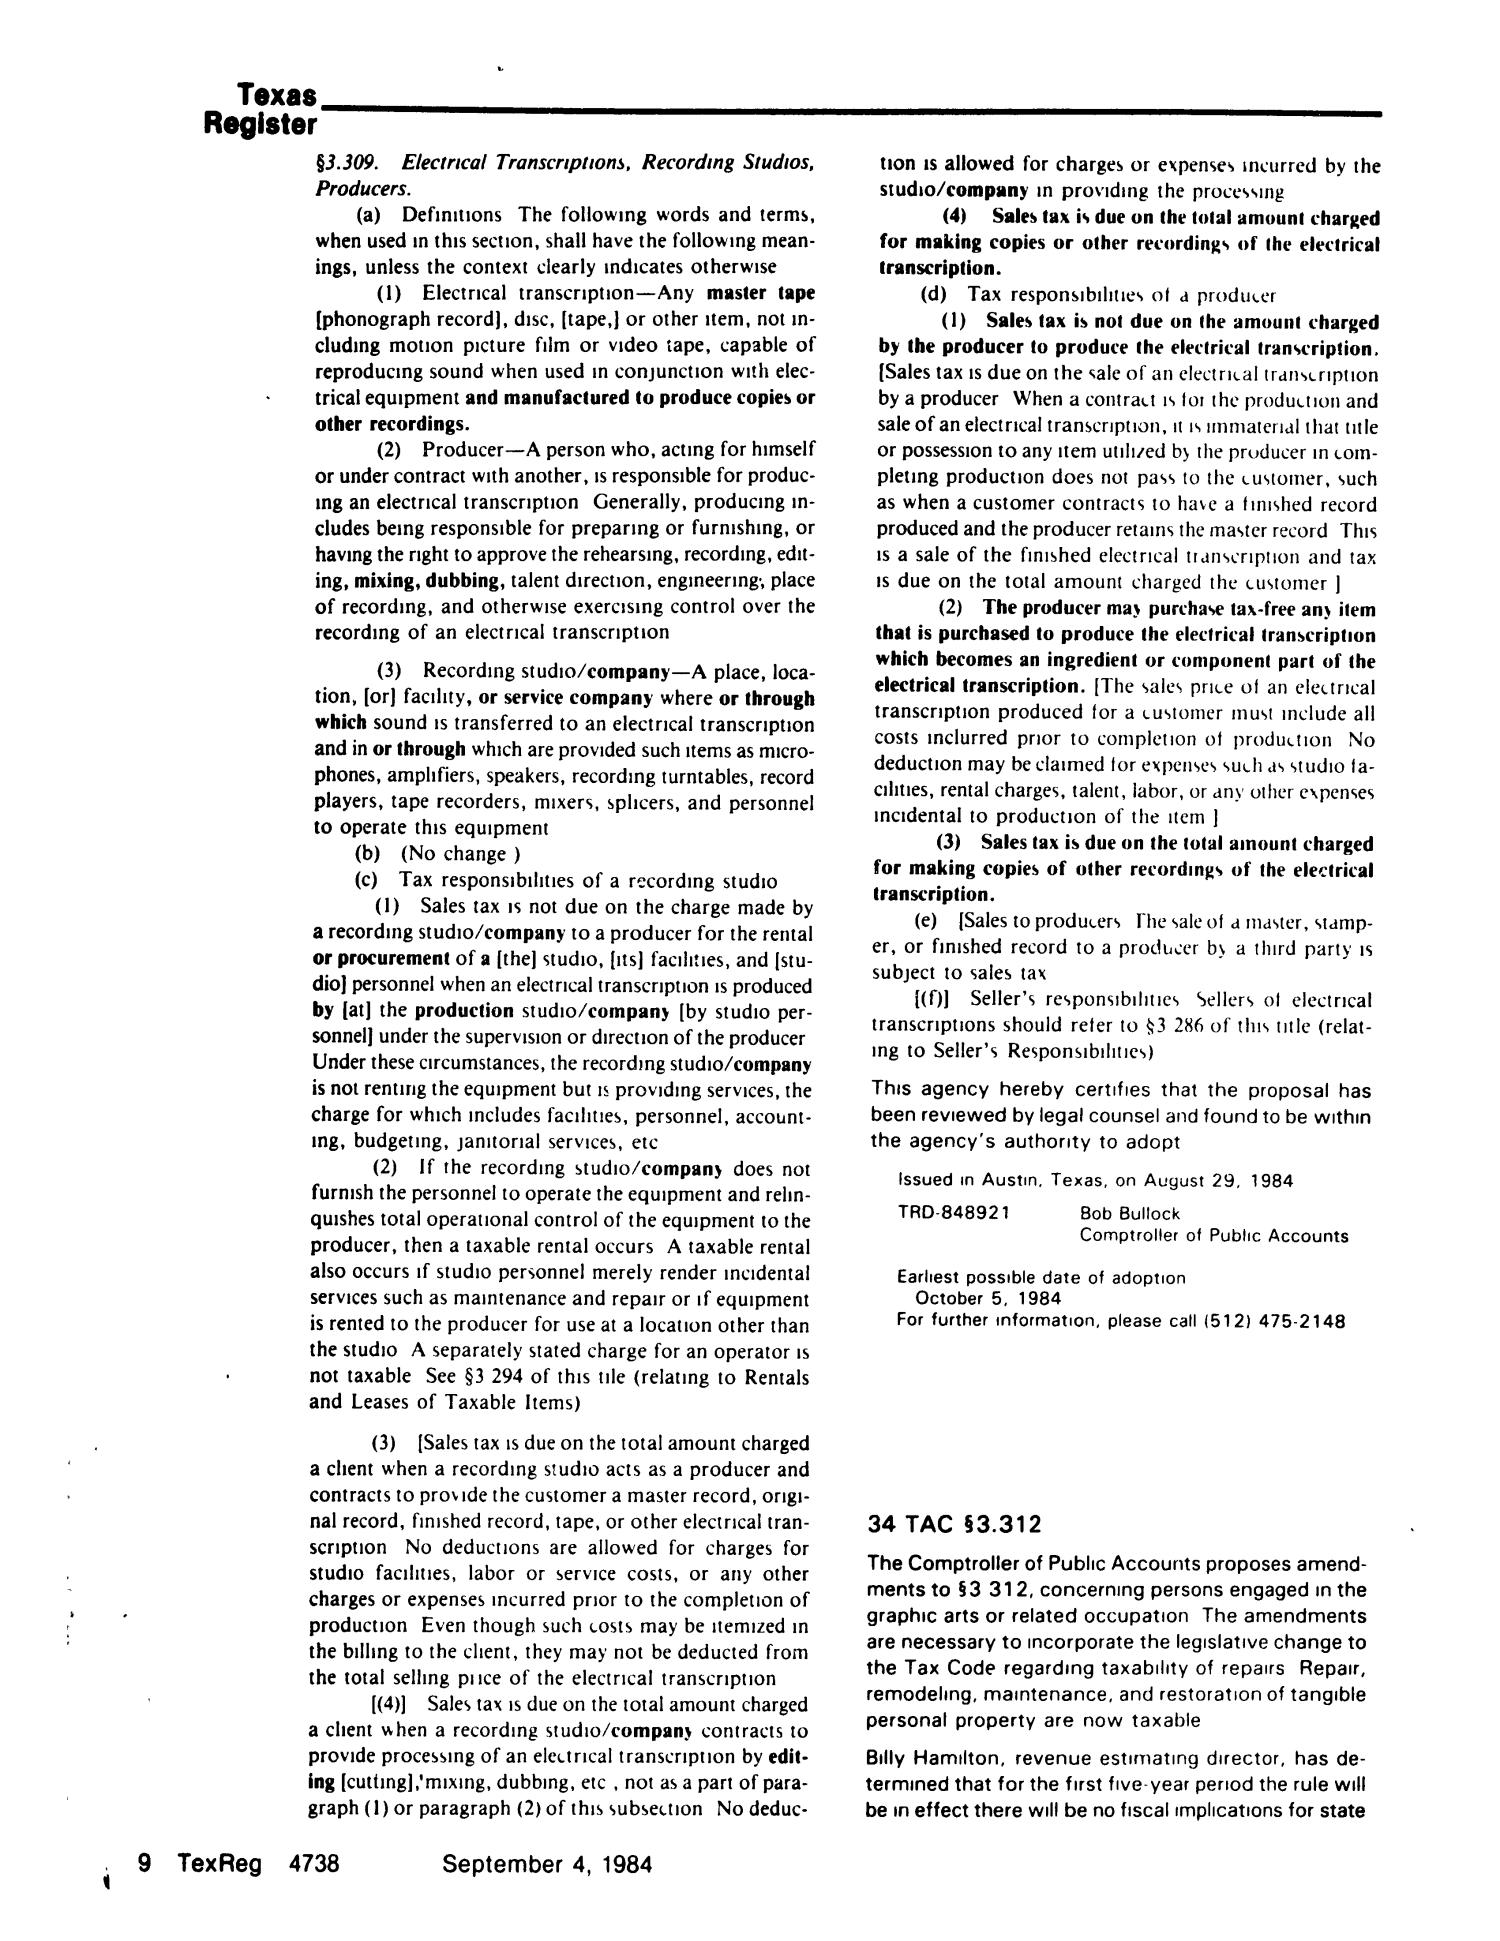 Texas Register, Volume 9, Number 66, Pages 4703-4756, September 4, 1984
                                                
                                                    4738
                                                